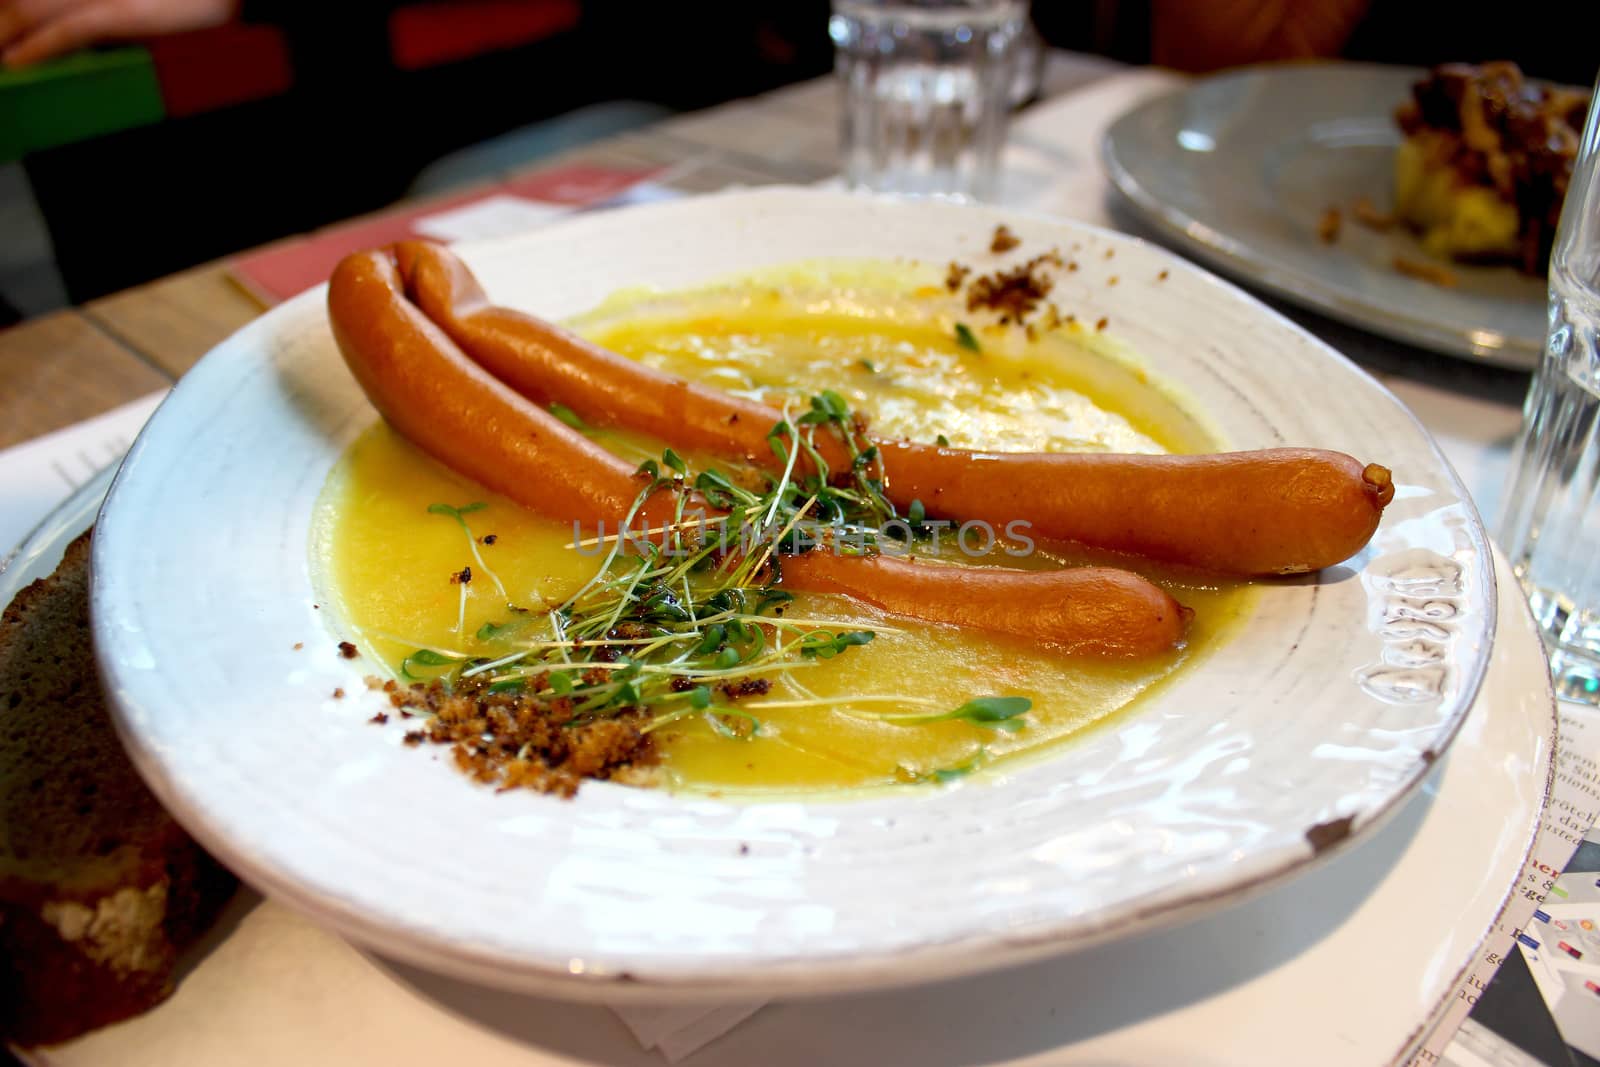 Frankfurter sausage with soup - Frankfurt restaurant, Germany